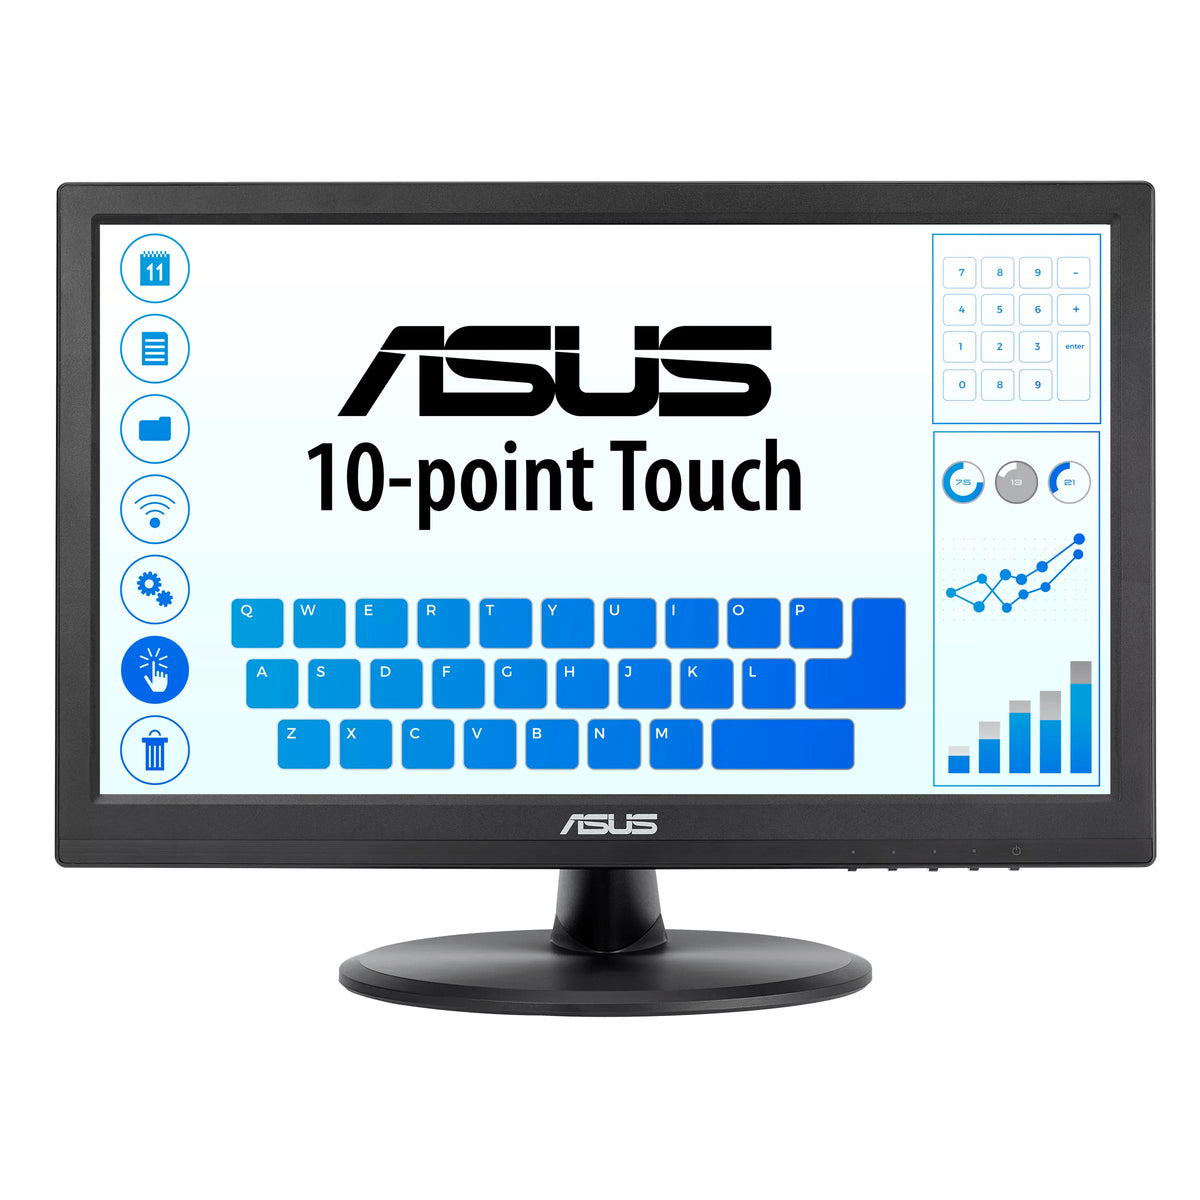 ASUS VT168HR - Monitor LED - 15.6" - ecrã de toque - 1366 x 768 WXGA @ 60 Hz - TN - 220 cd/m² - 400:1 - 5 ms - HDMI, VGA